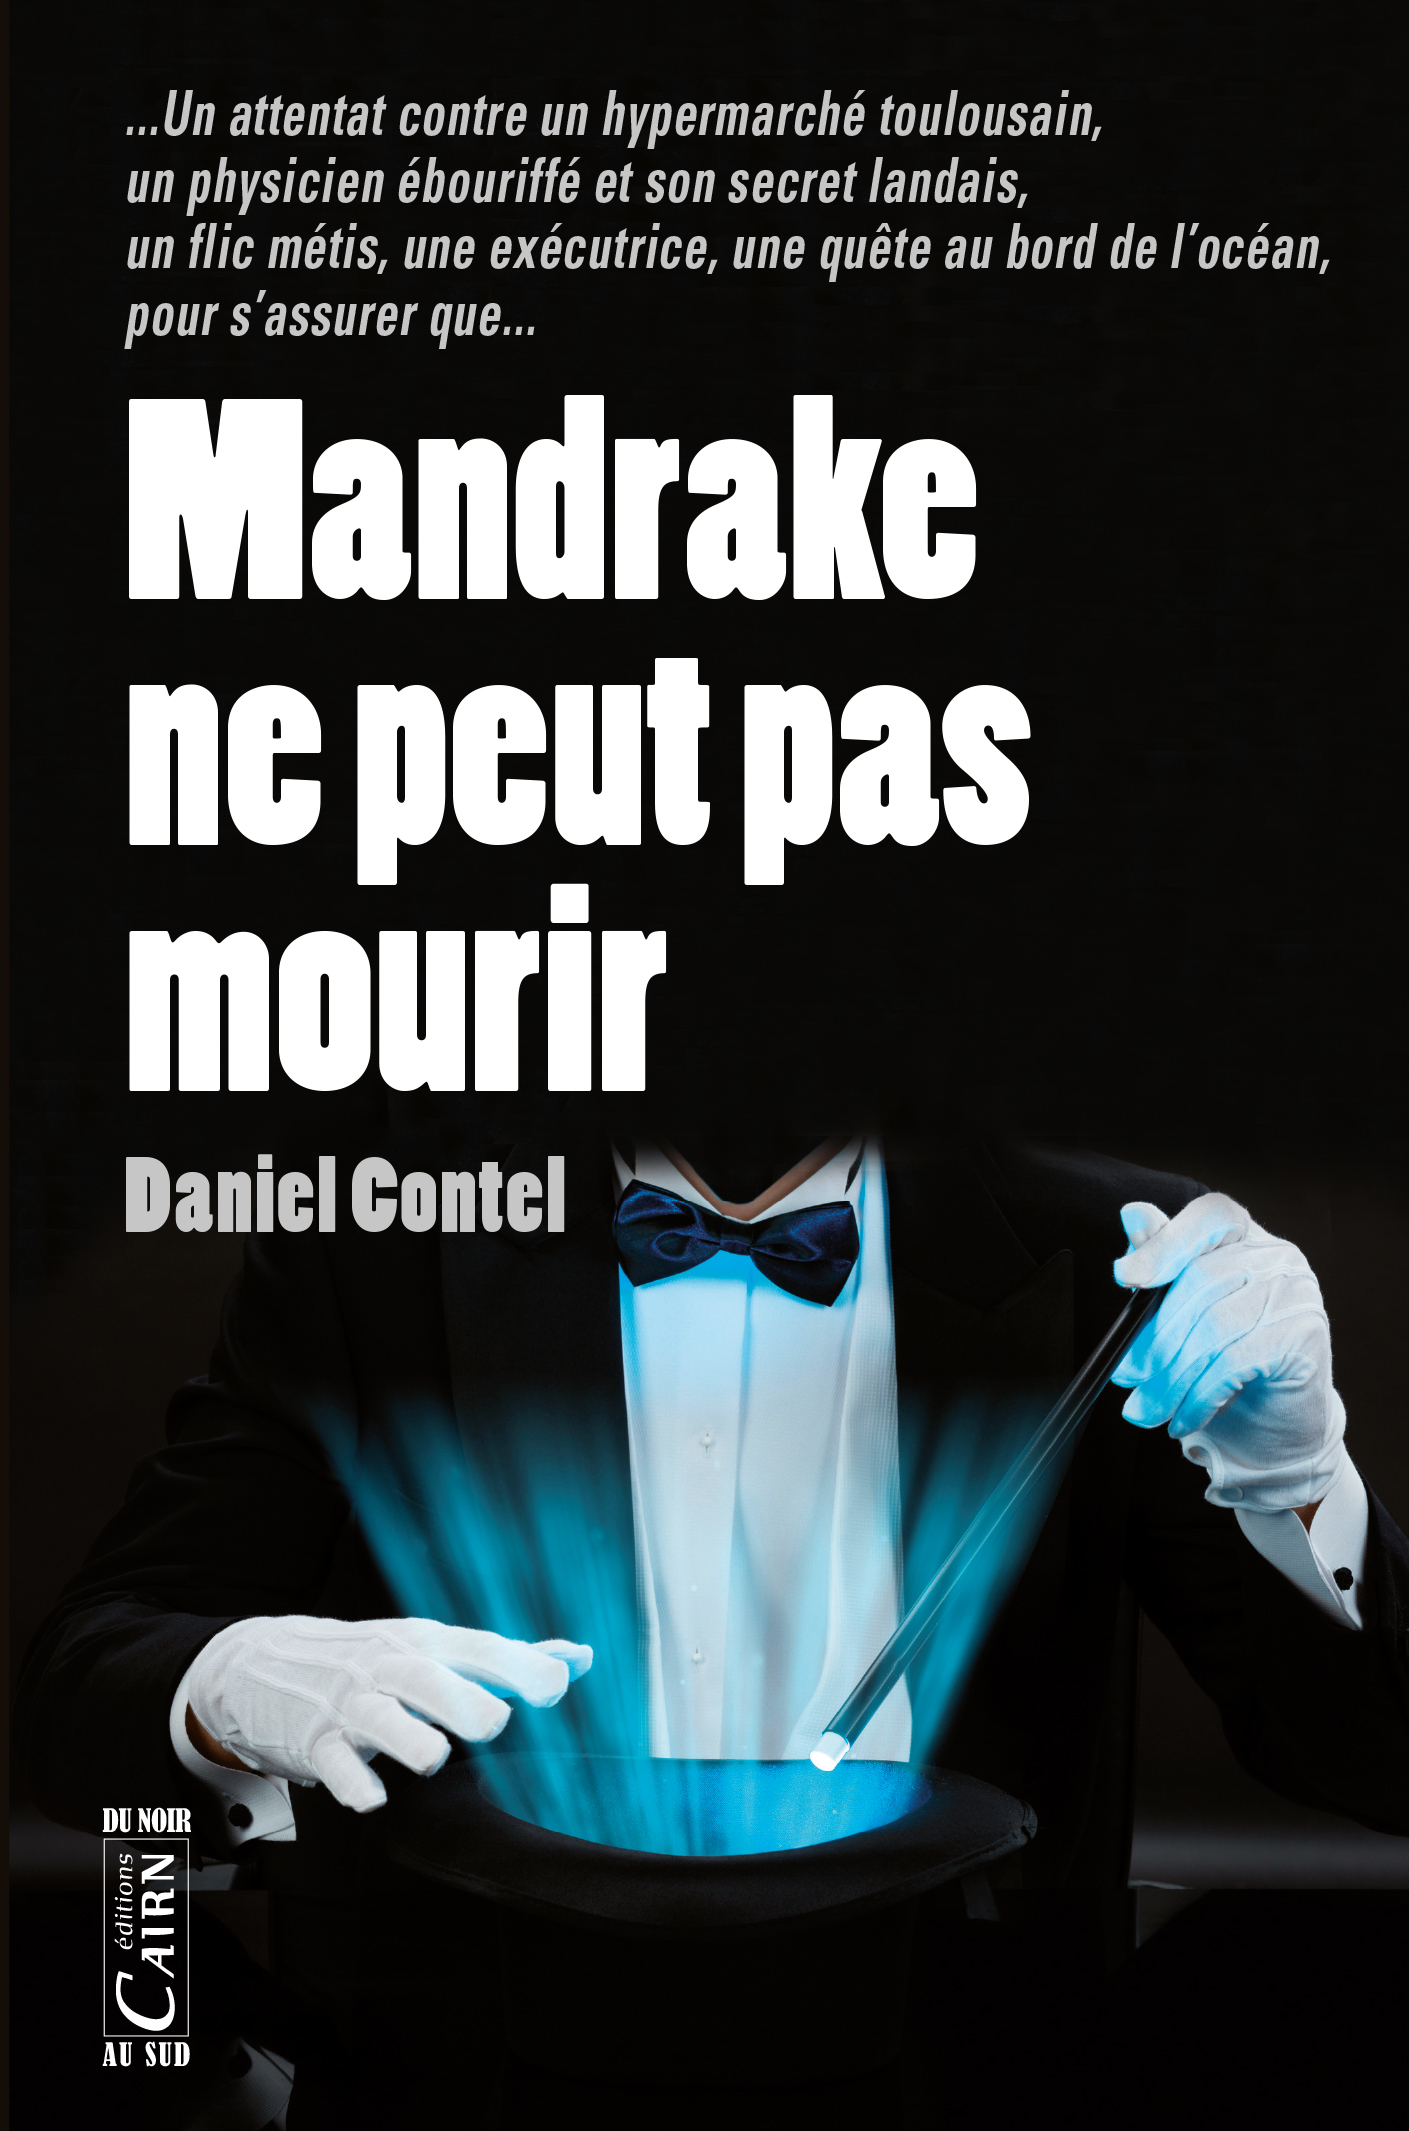 Mandrake ne peut pas mourir De Daniel Contel - Cairn